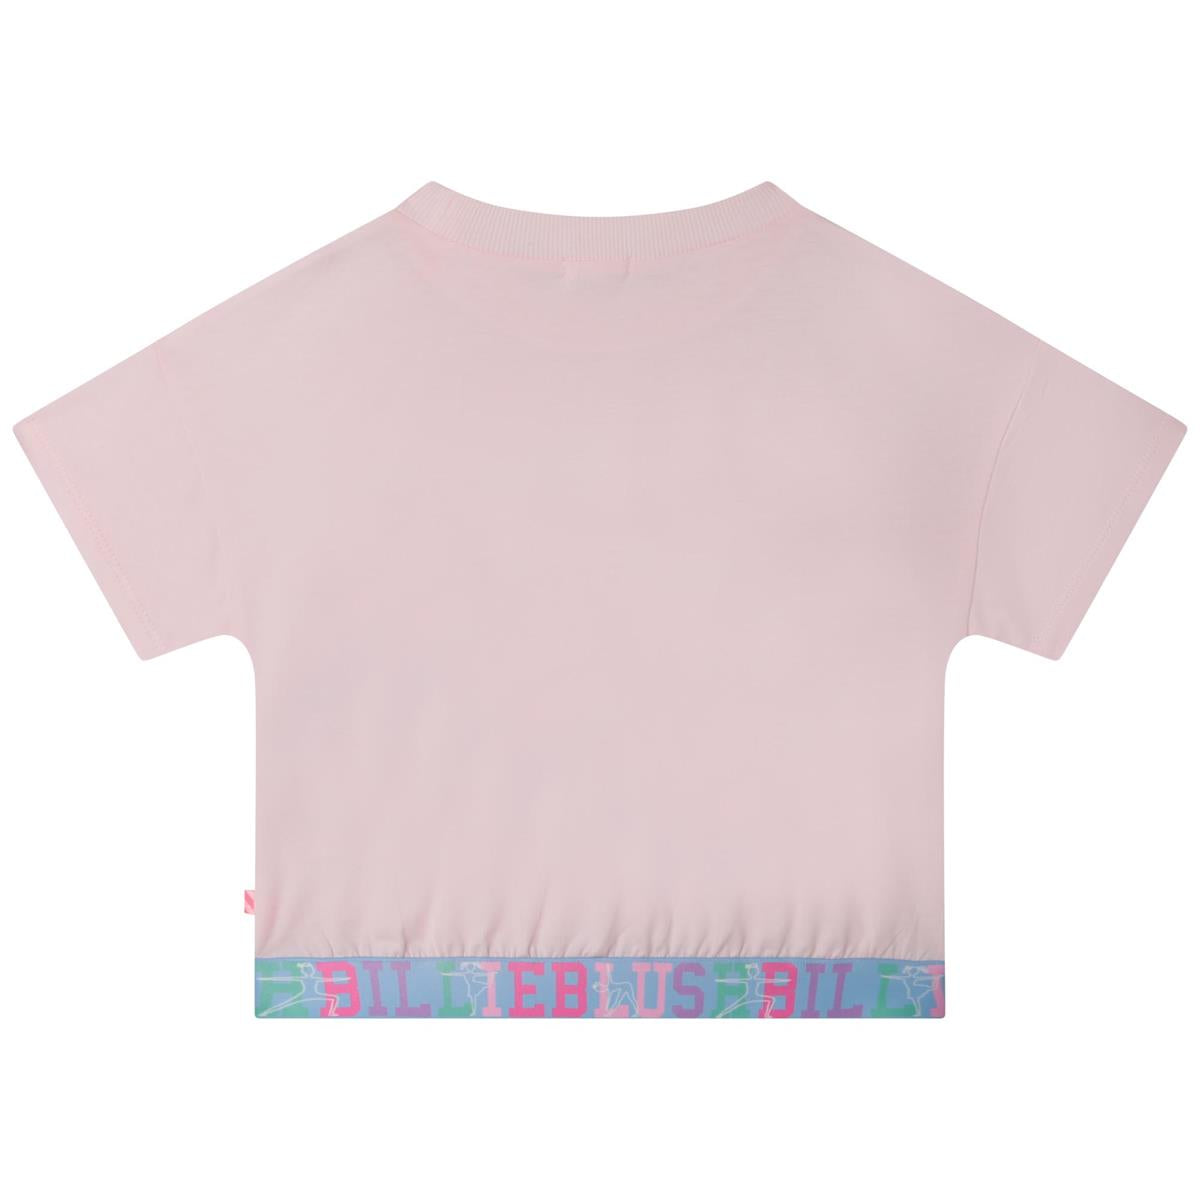 Girls Light Pink Logo T-Shirt